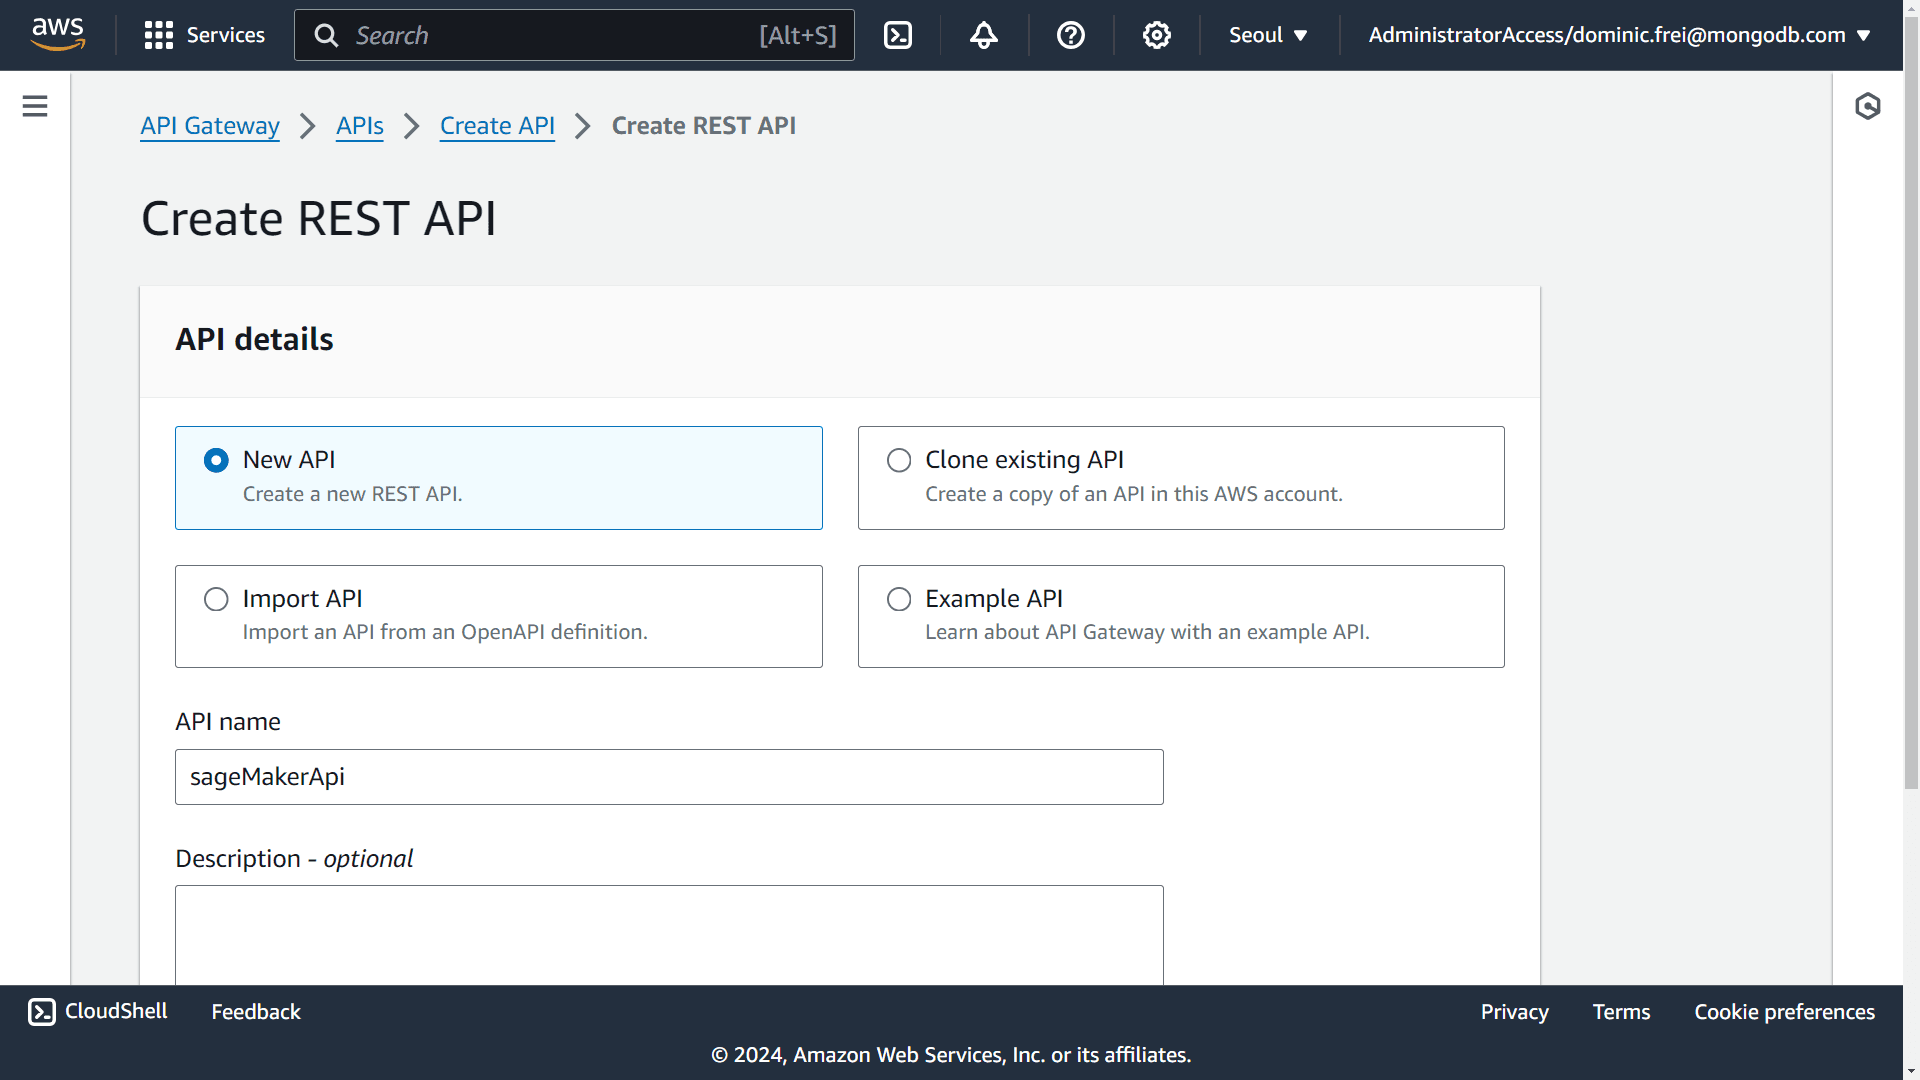 Creating a REST API in API Gateway